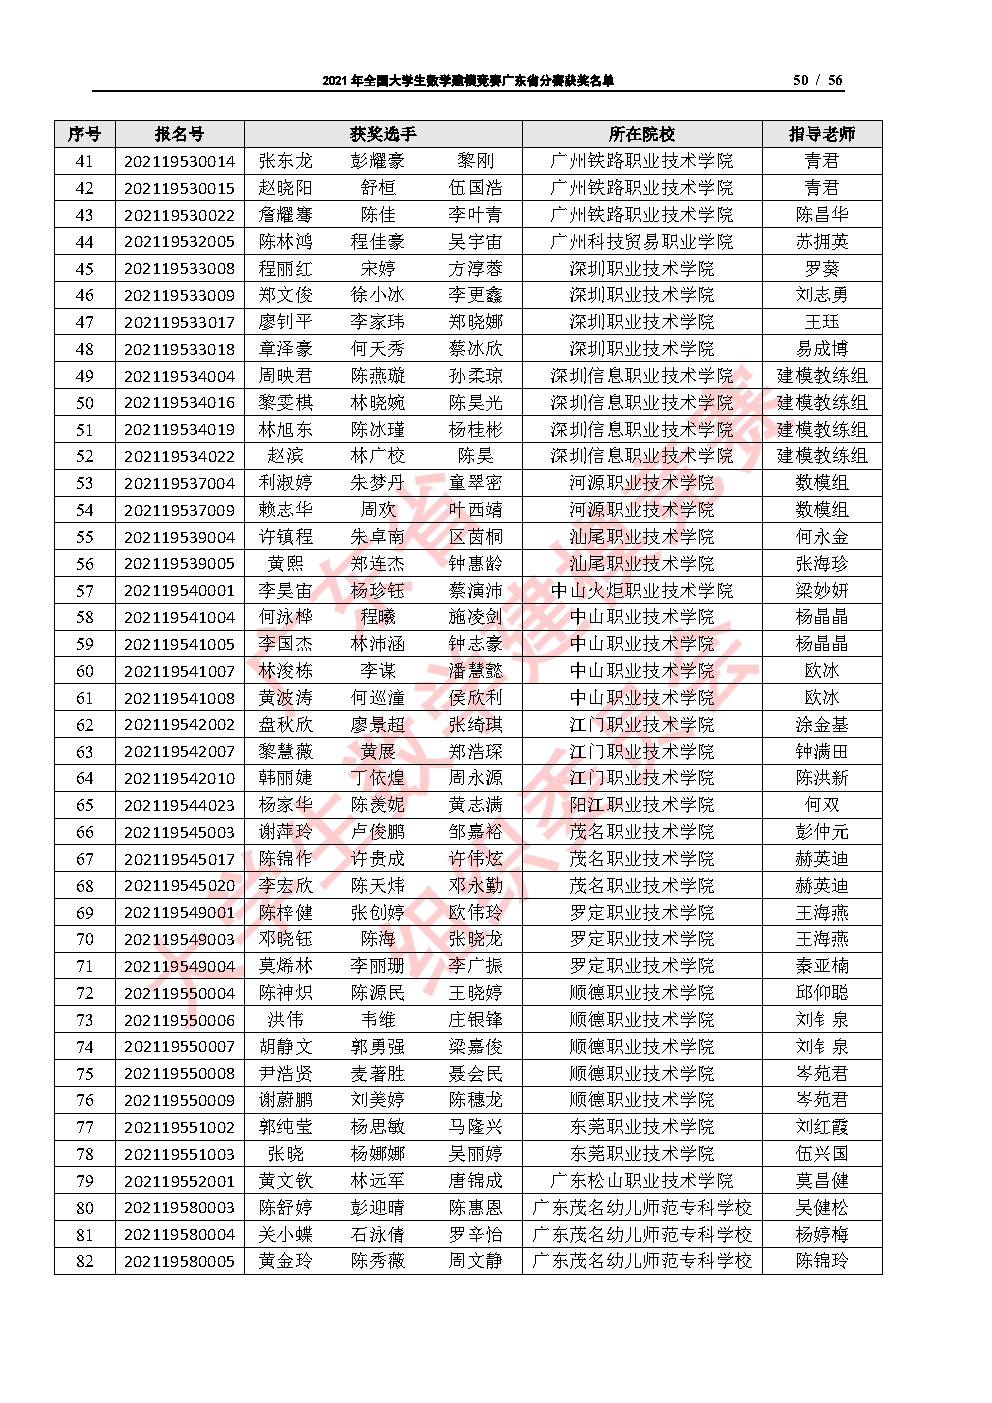 2021年全国大学生数学建模竞赛广东省分赛获奖名单_Page50.png